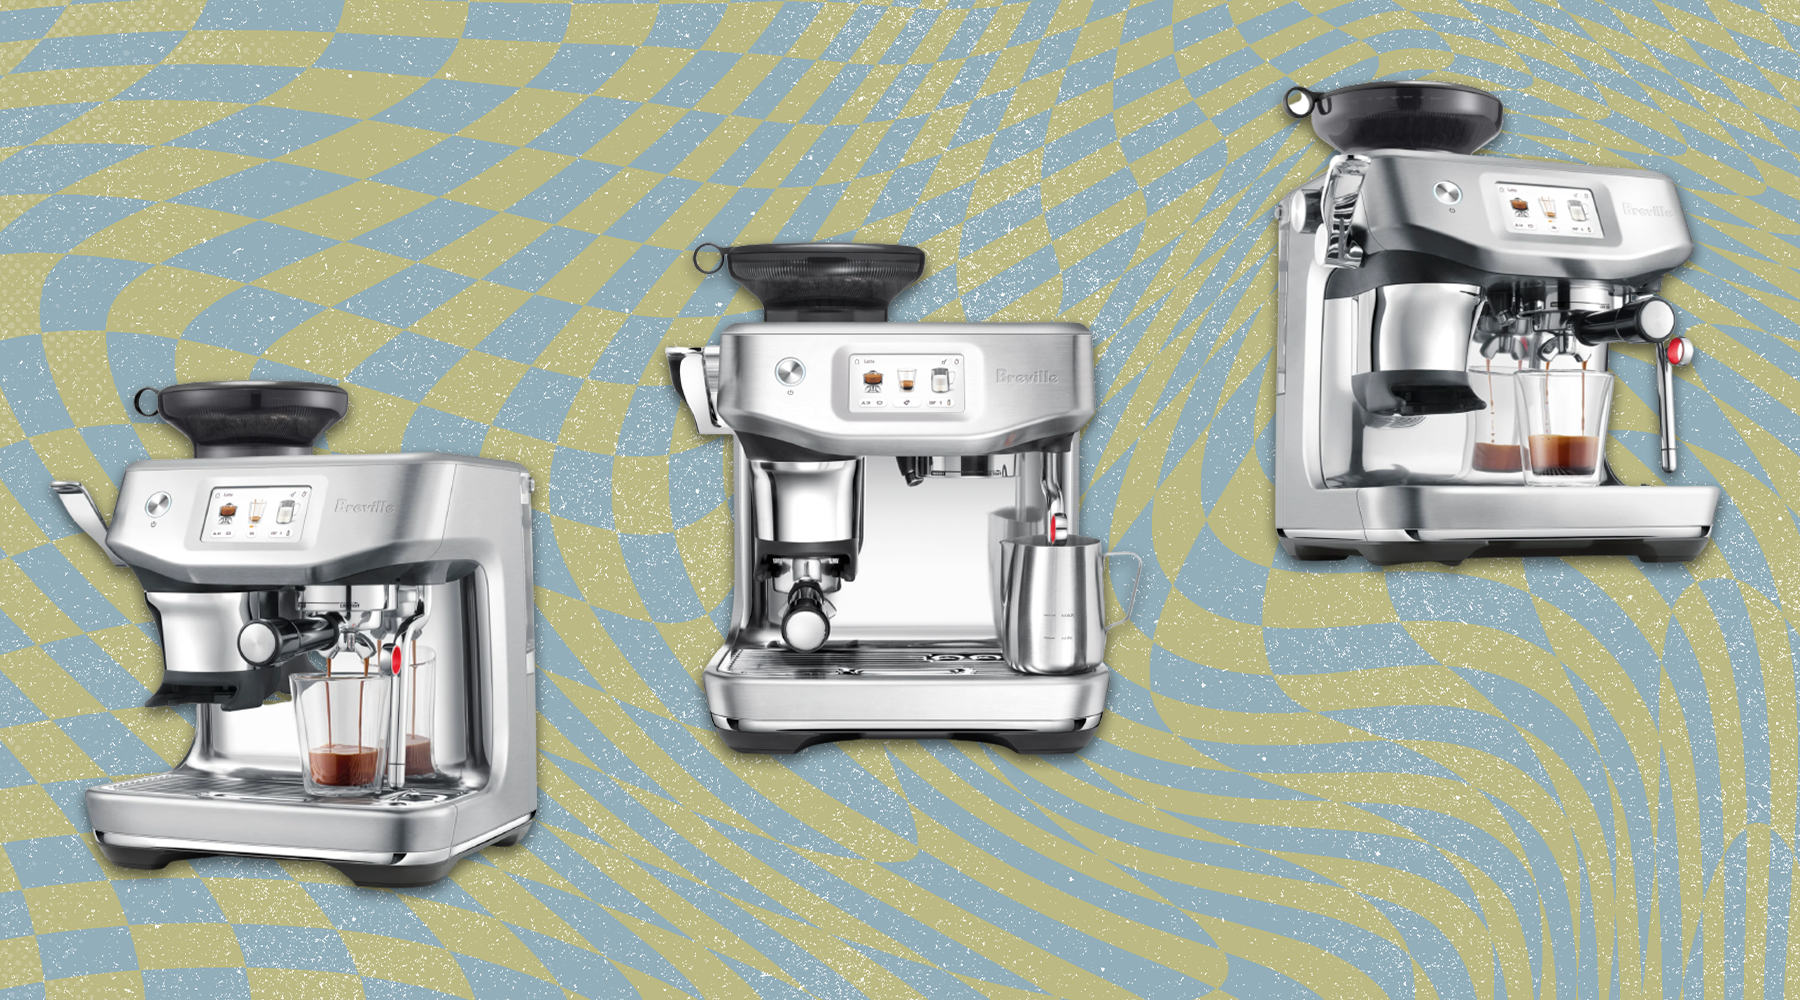 Breville Barista Touch Impress Review: Best espresso machine we